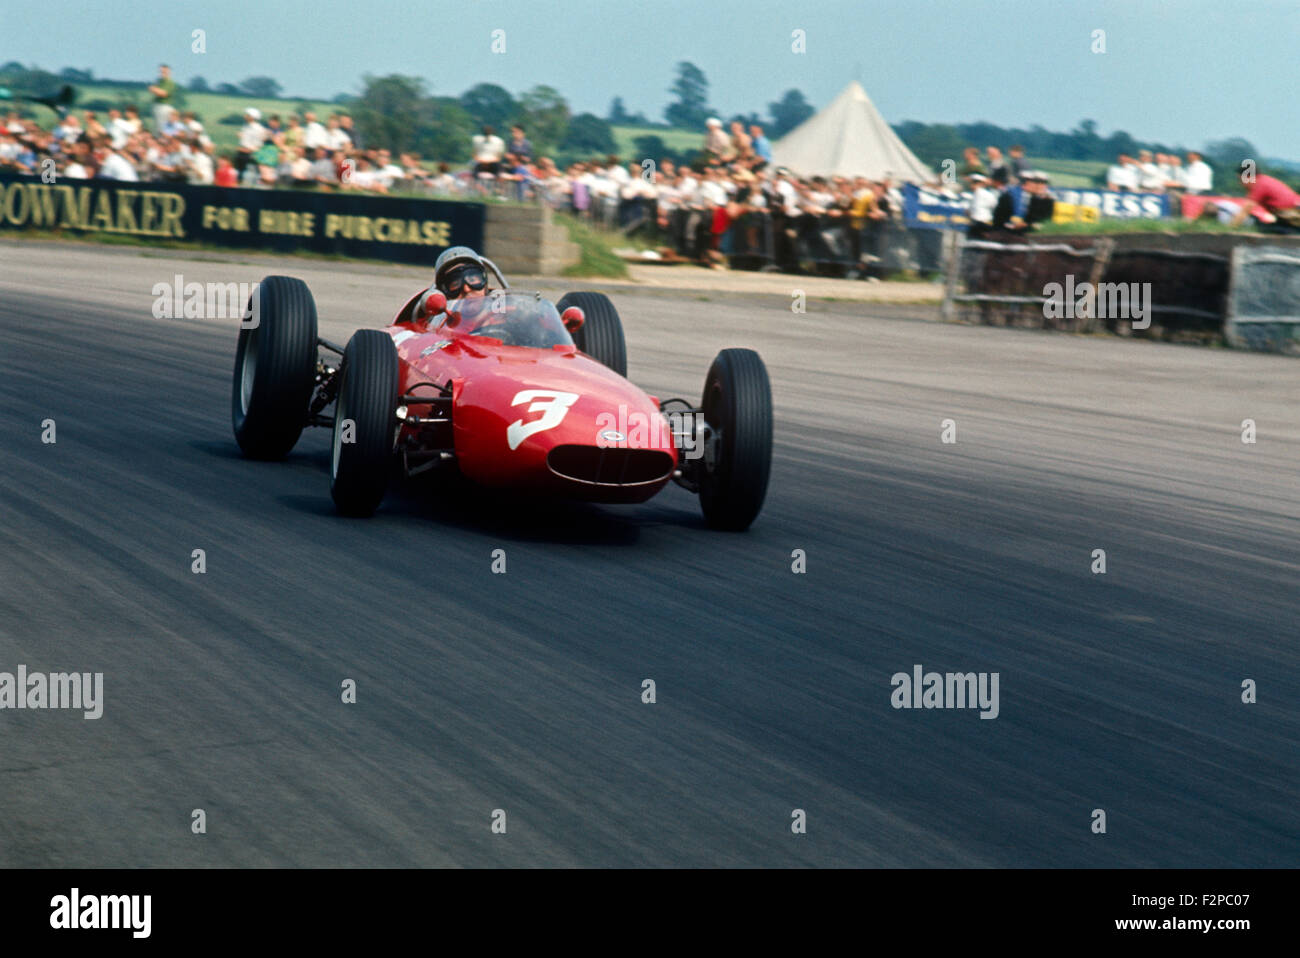 1960s BRM racing car Stock Photo